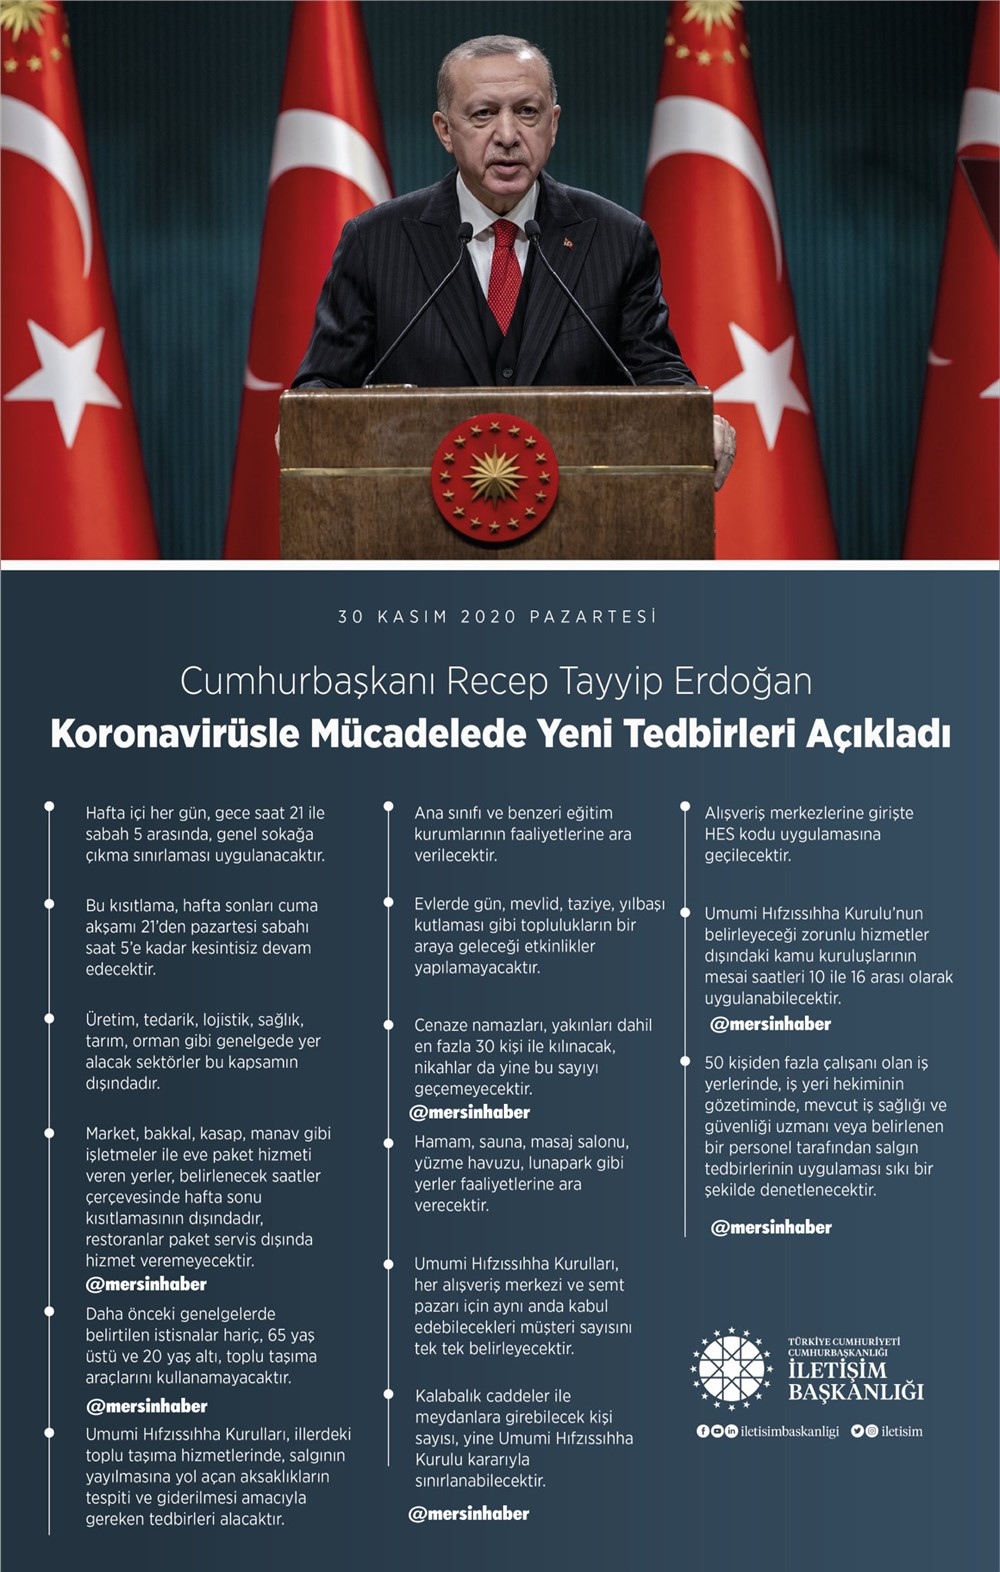 Cumhurbaşkanı Erdoğan'ın Açıkladığı Koronavirüs Tedbirleri